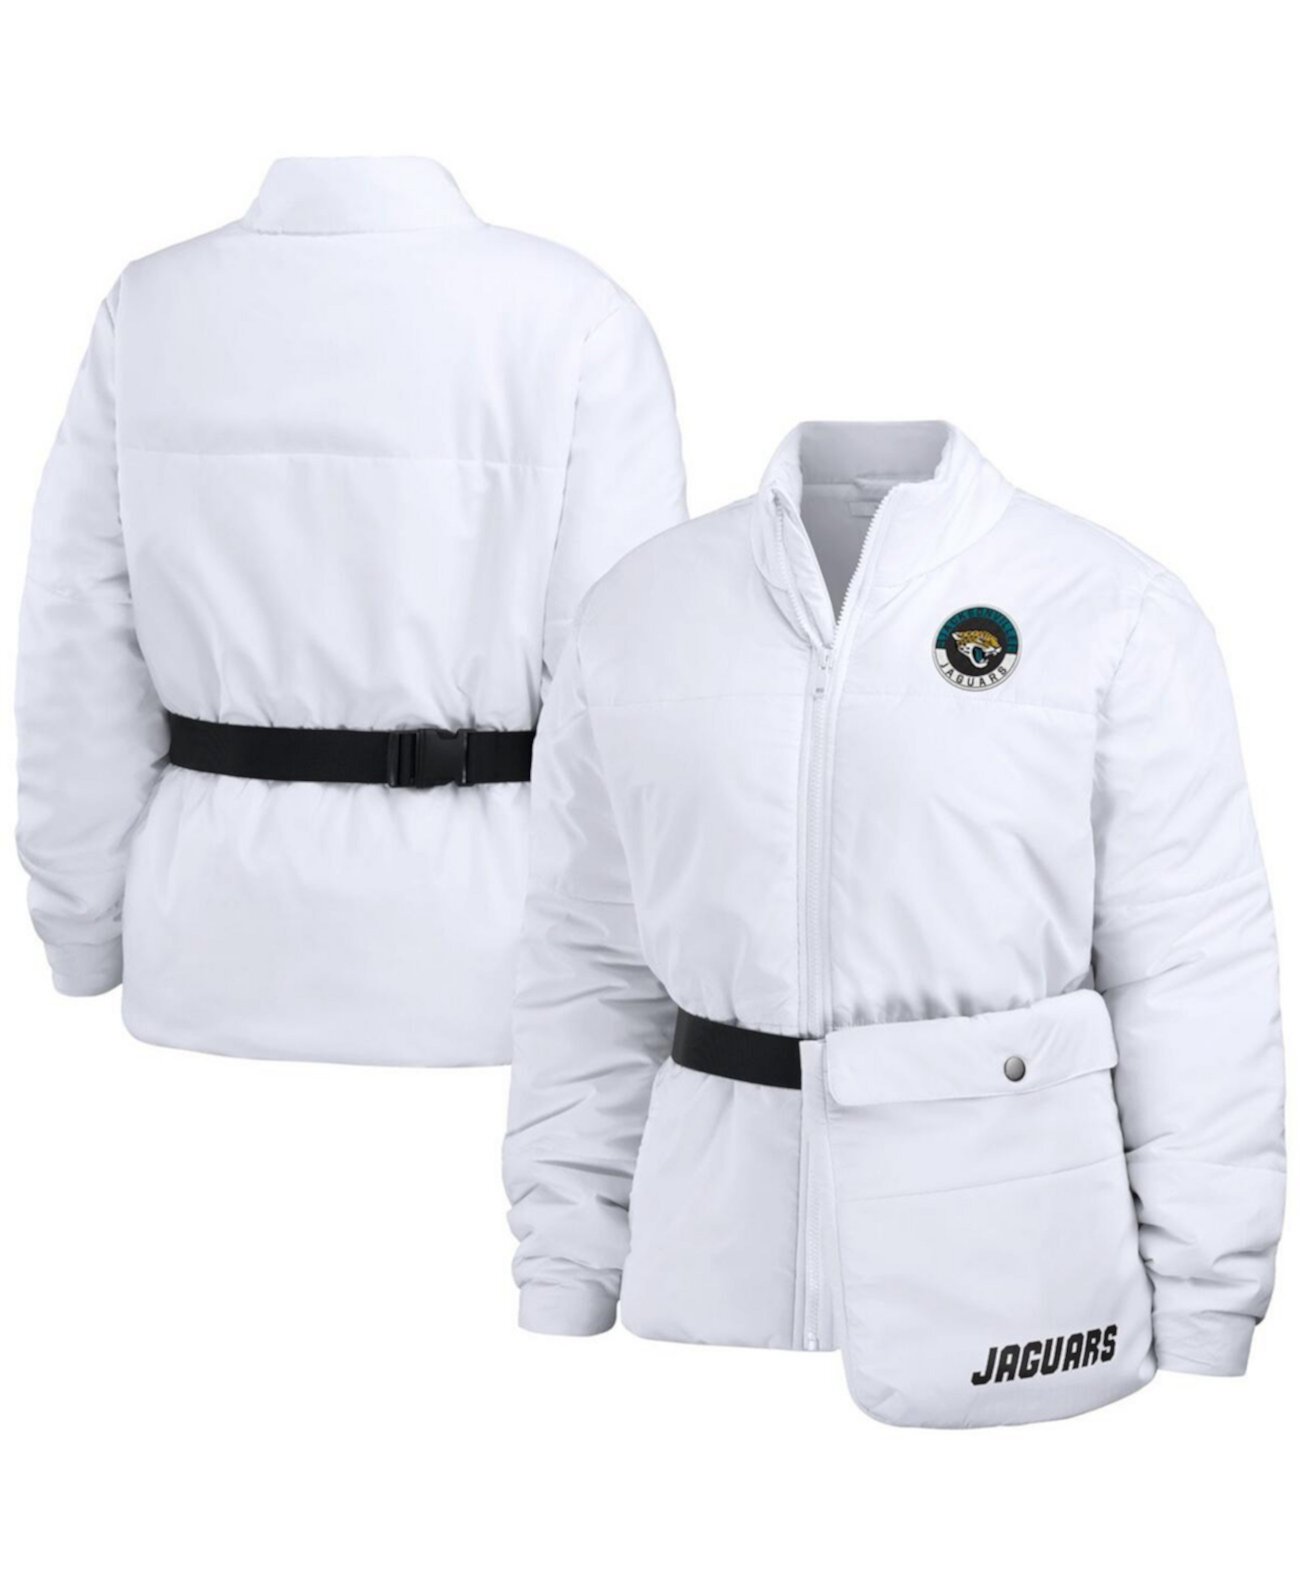 Женская белая куртка-пуховик с молнией во всю длину Jacksonville Jaguars Packaway WEAR by Erin Andrews